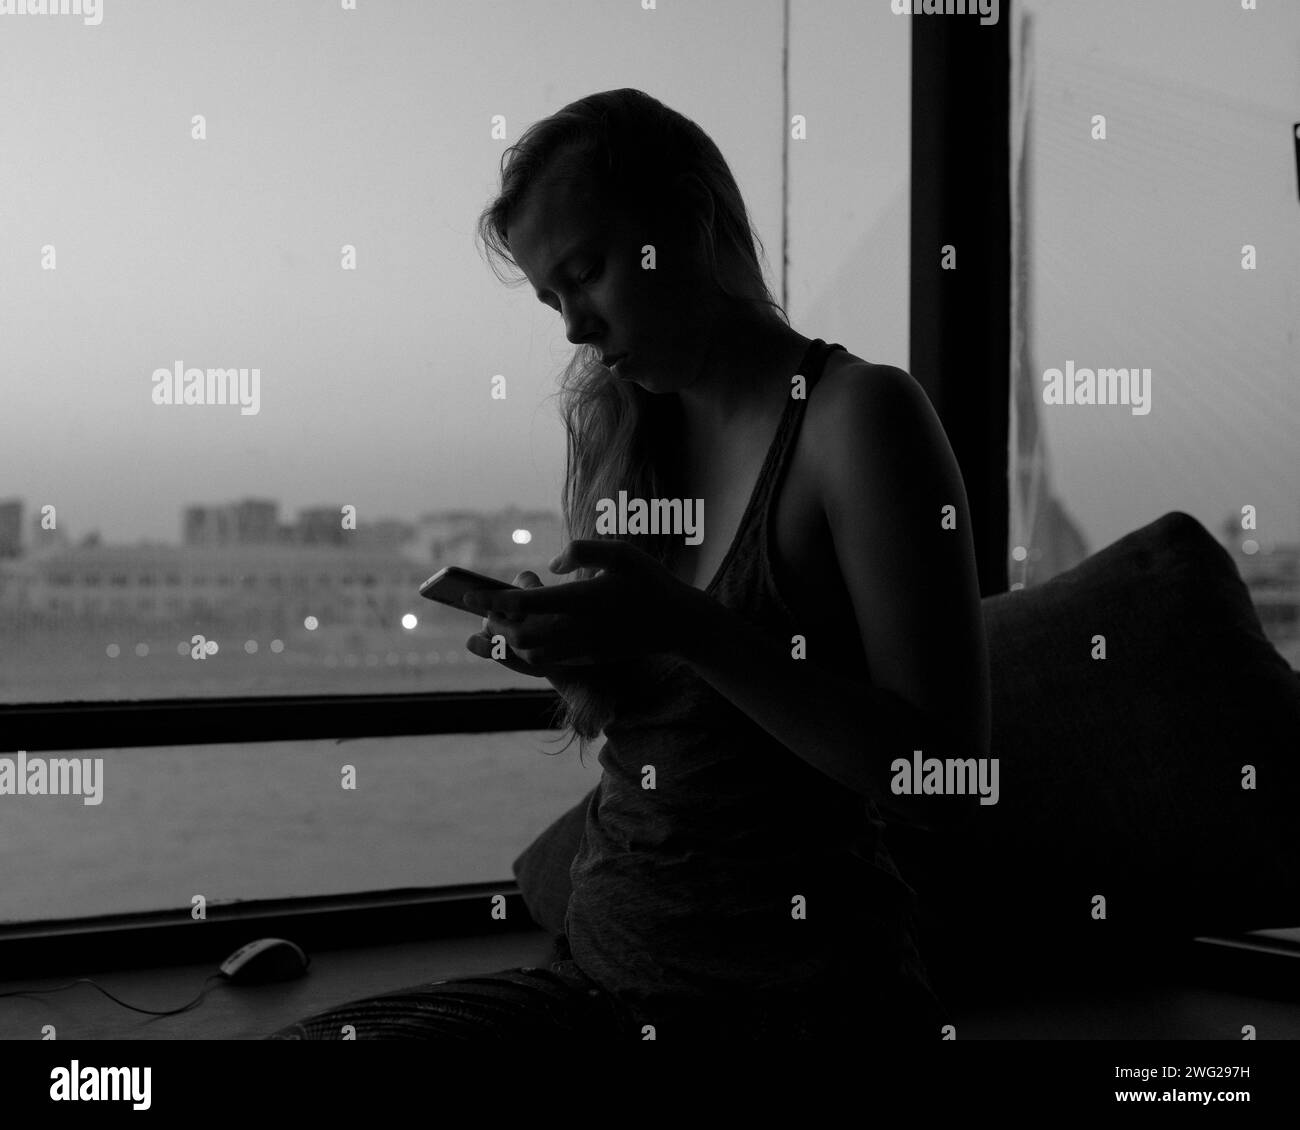 Una chica se sienta sola en una ventana. Foto de stock